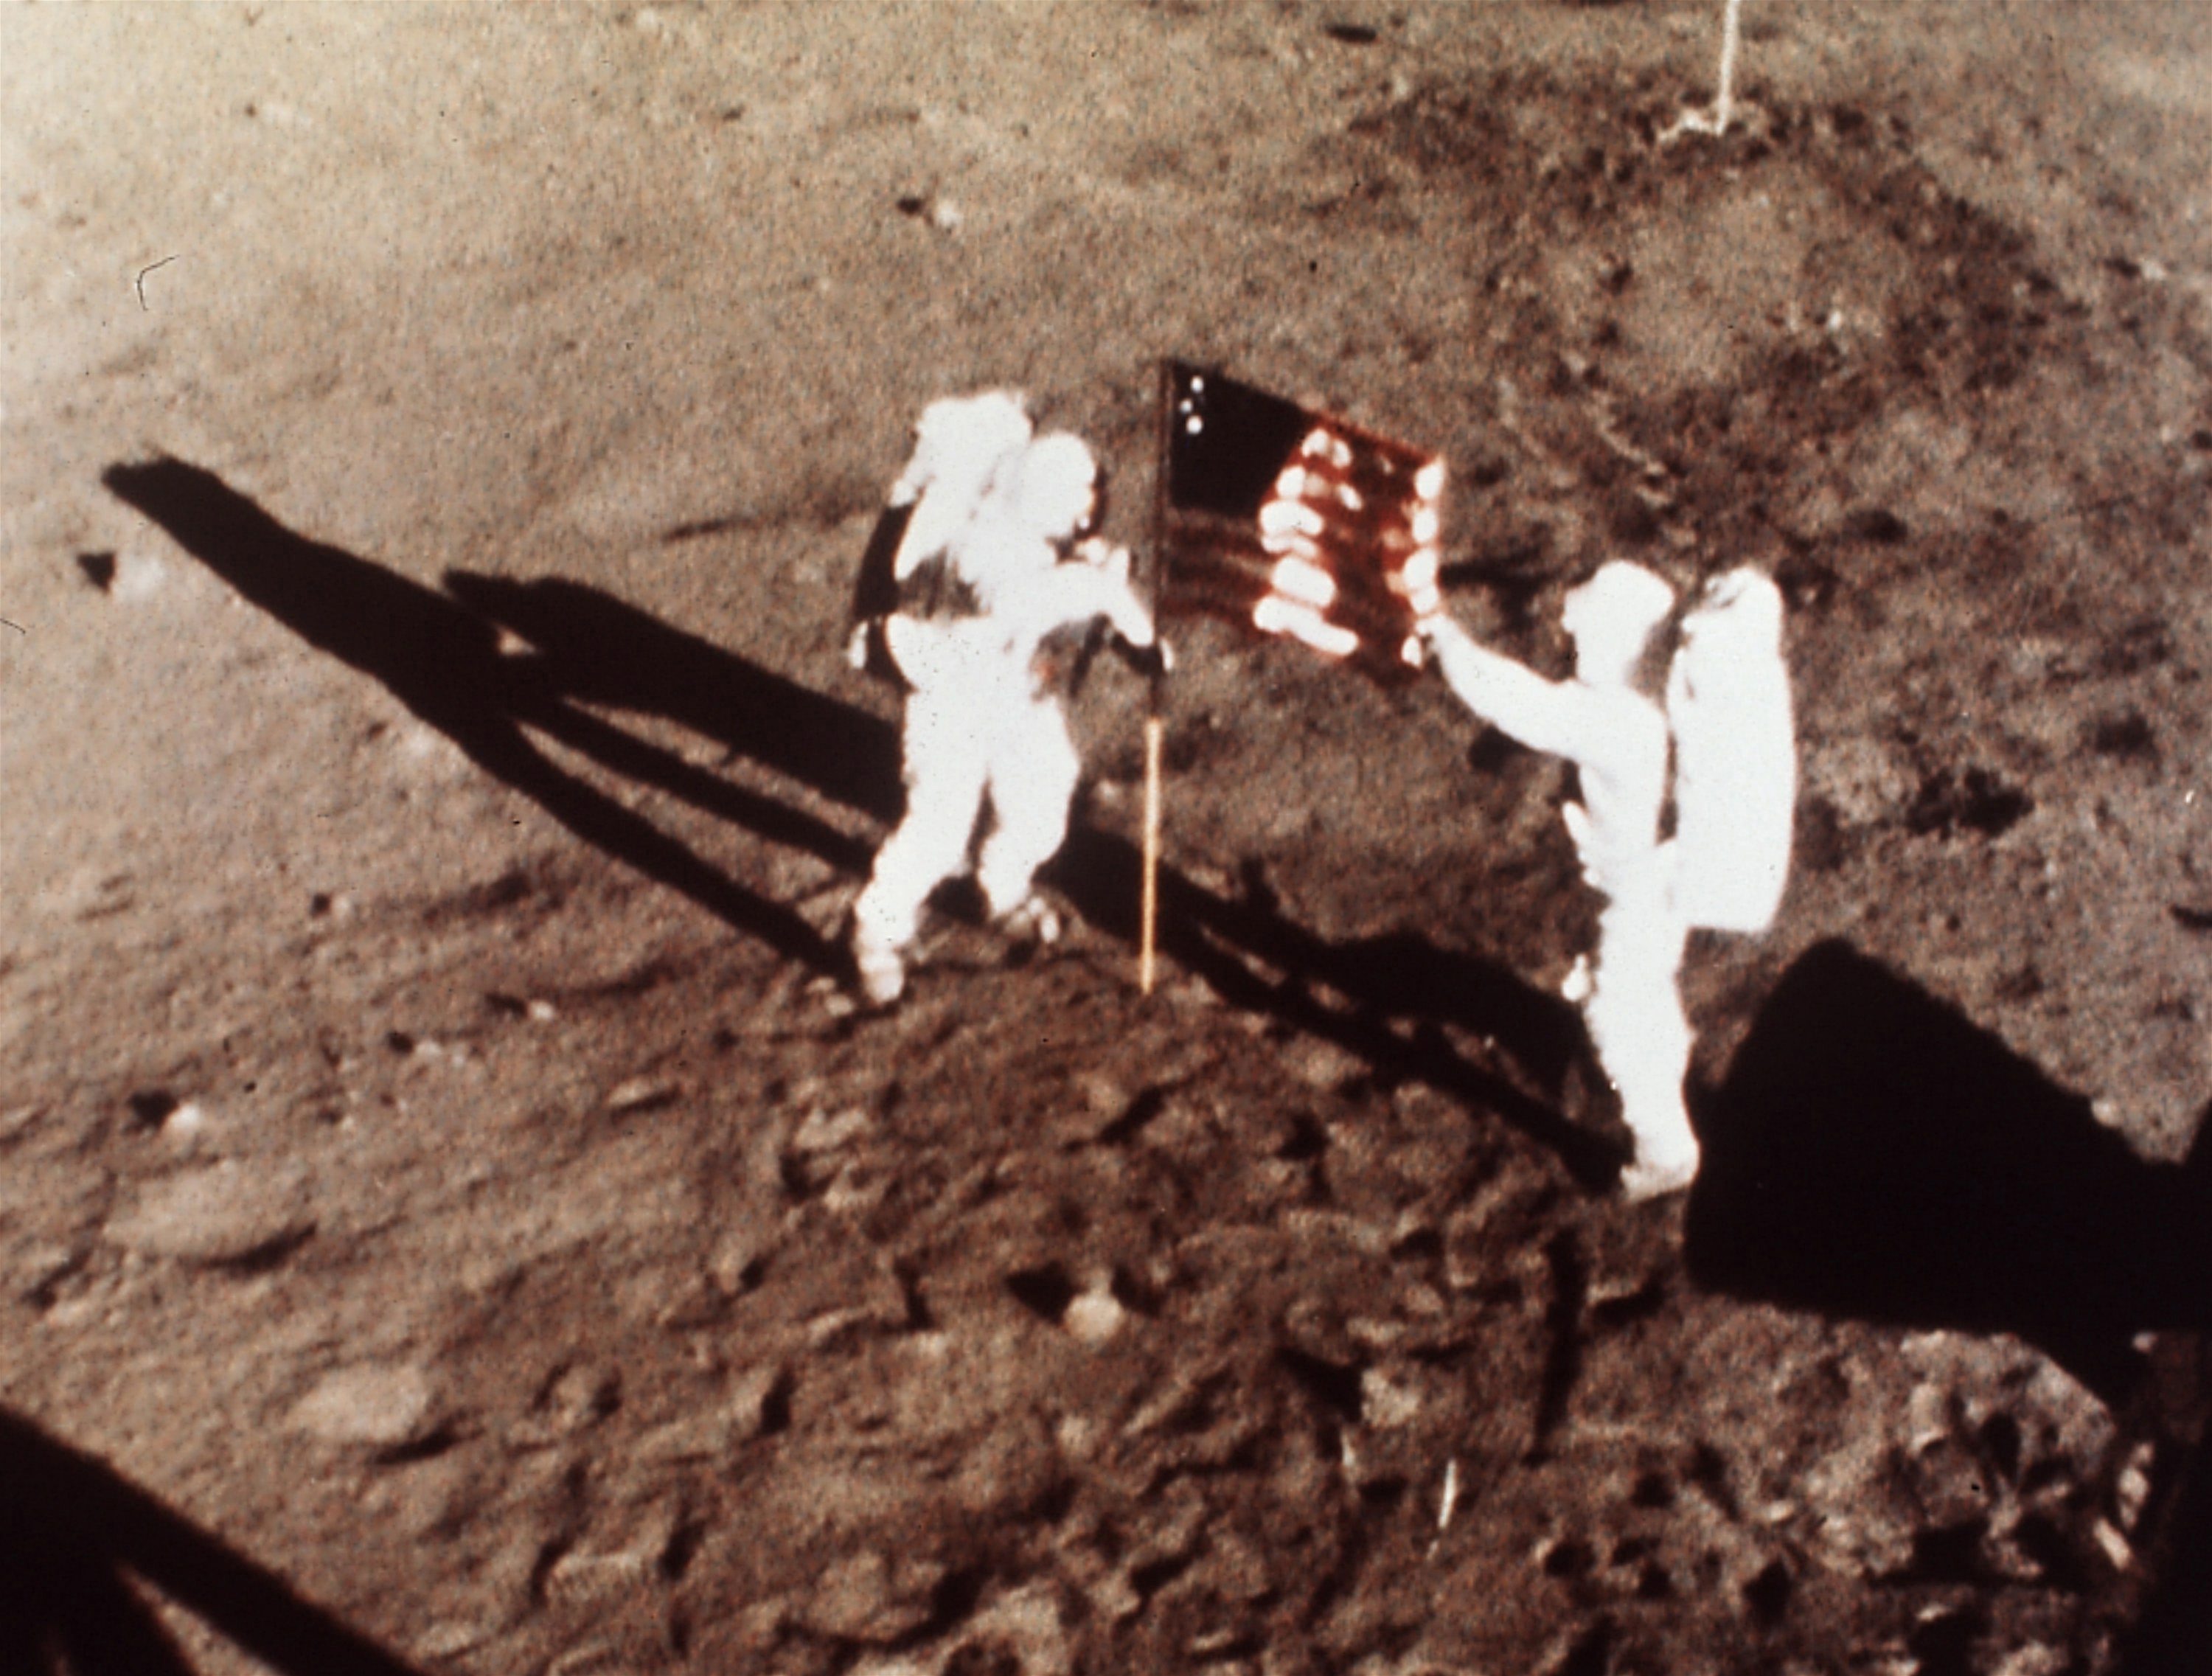 Armstrong und Aldrin auf dem Mond